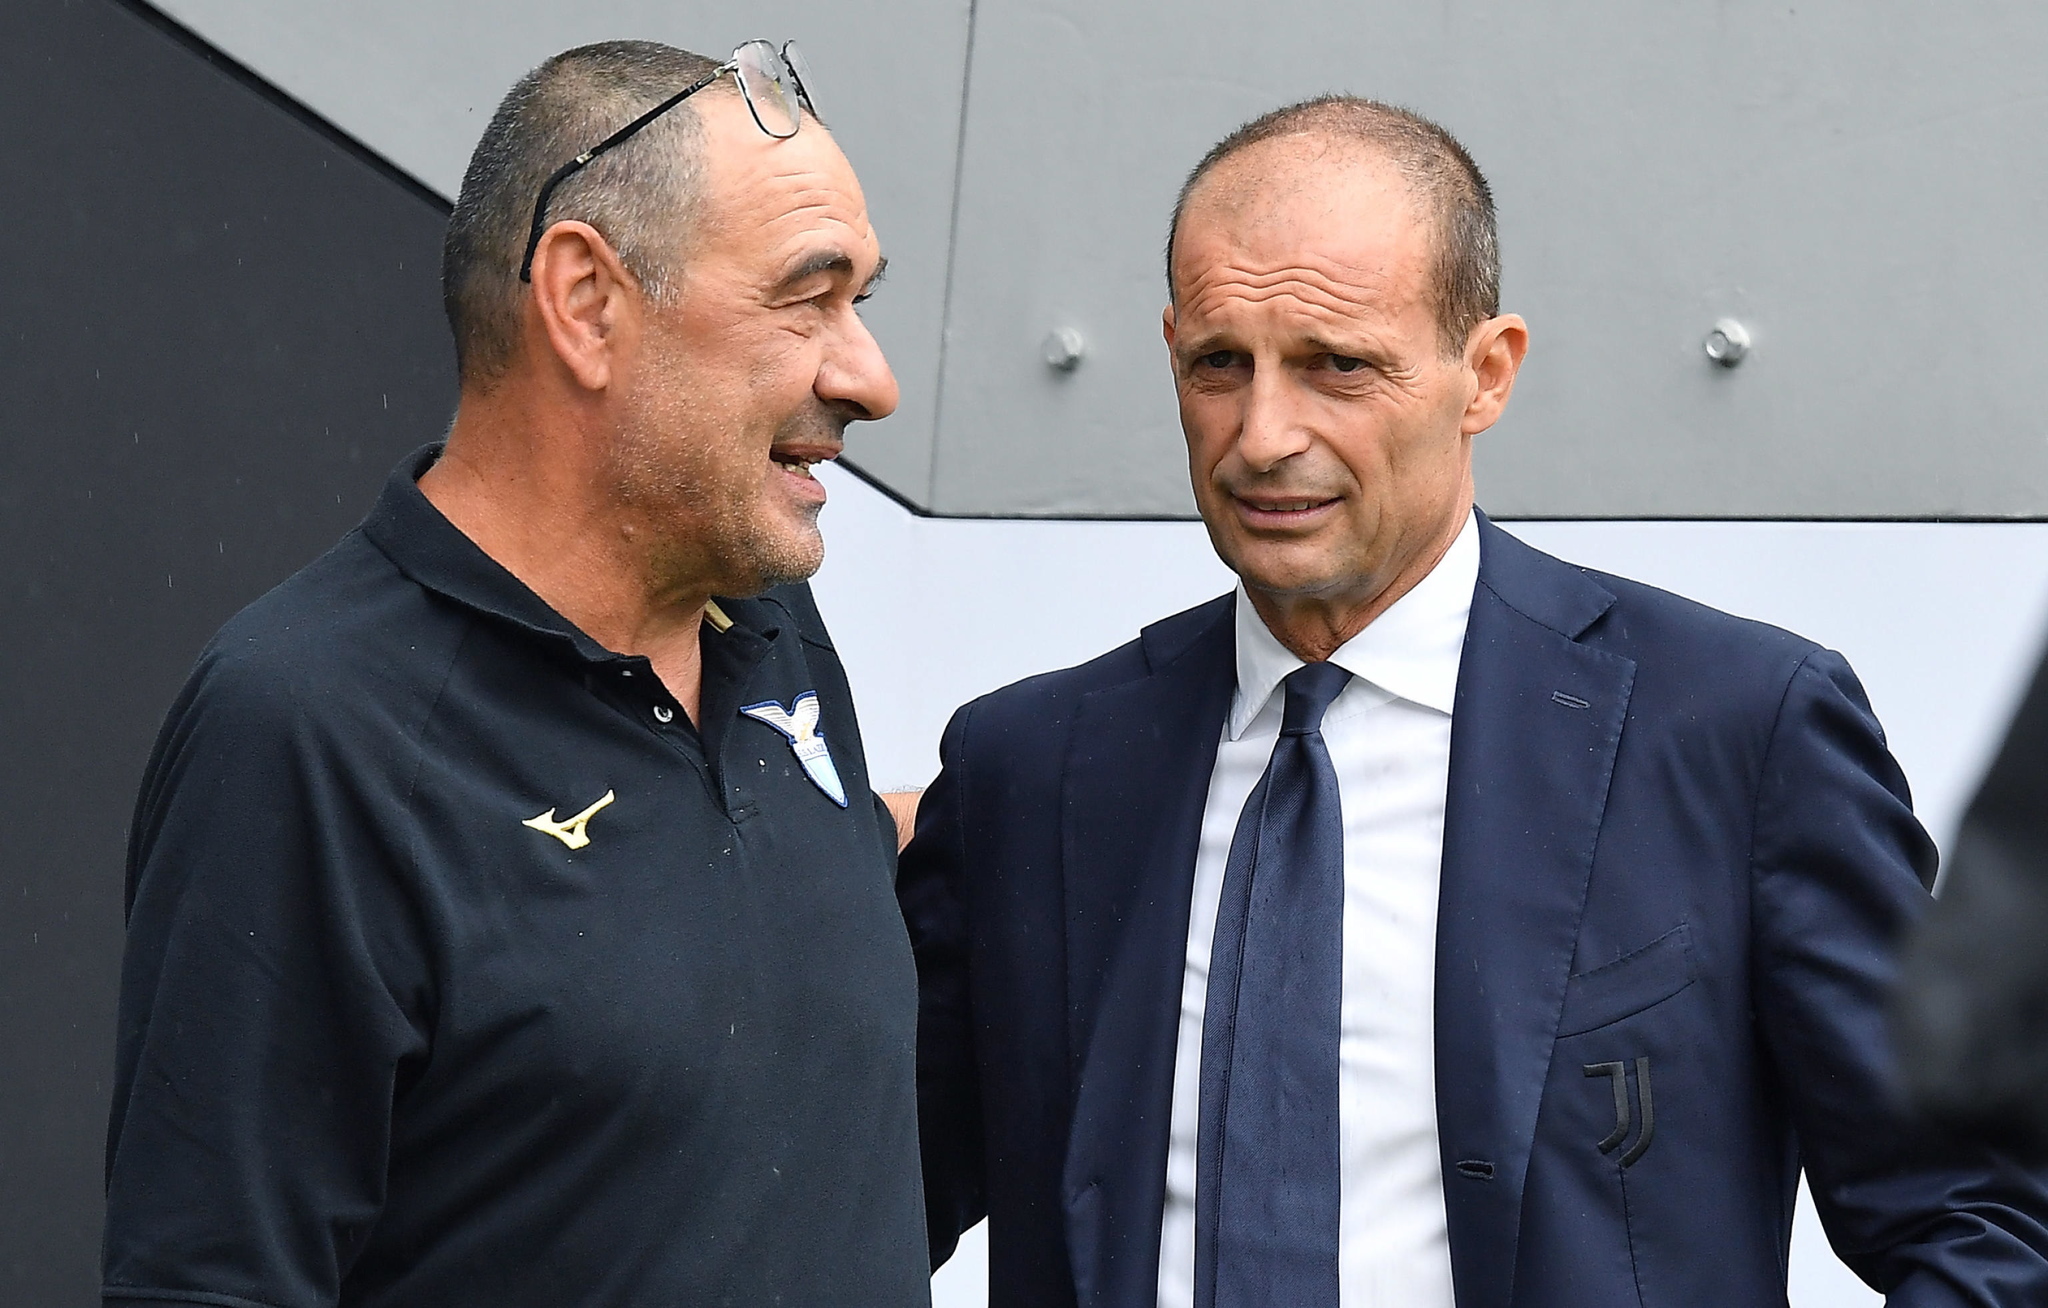 La Juventus muestra su candidatura al Scudetto y agrava la crisis de La Lazio